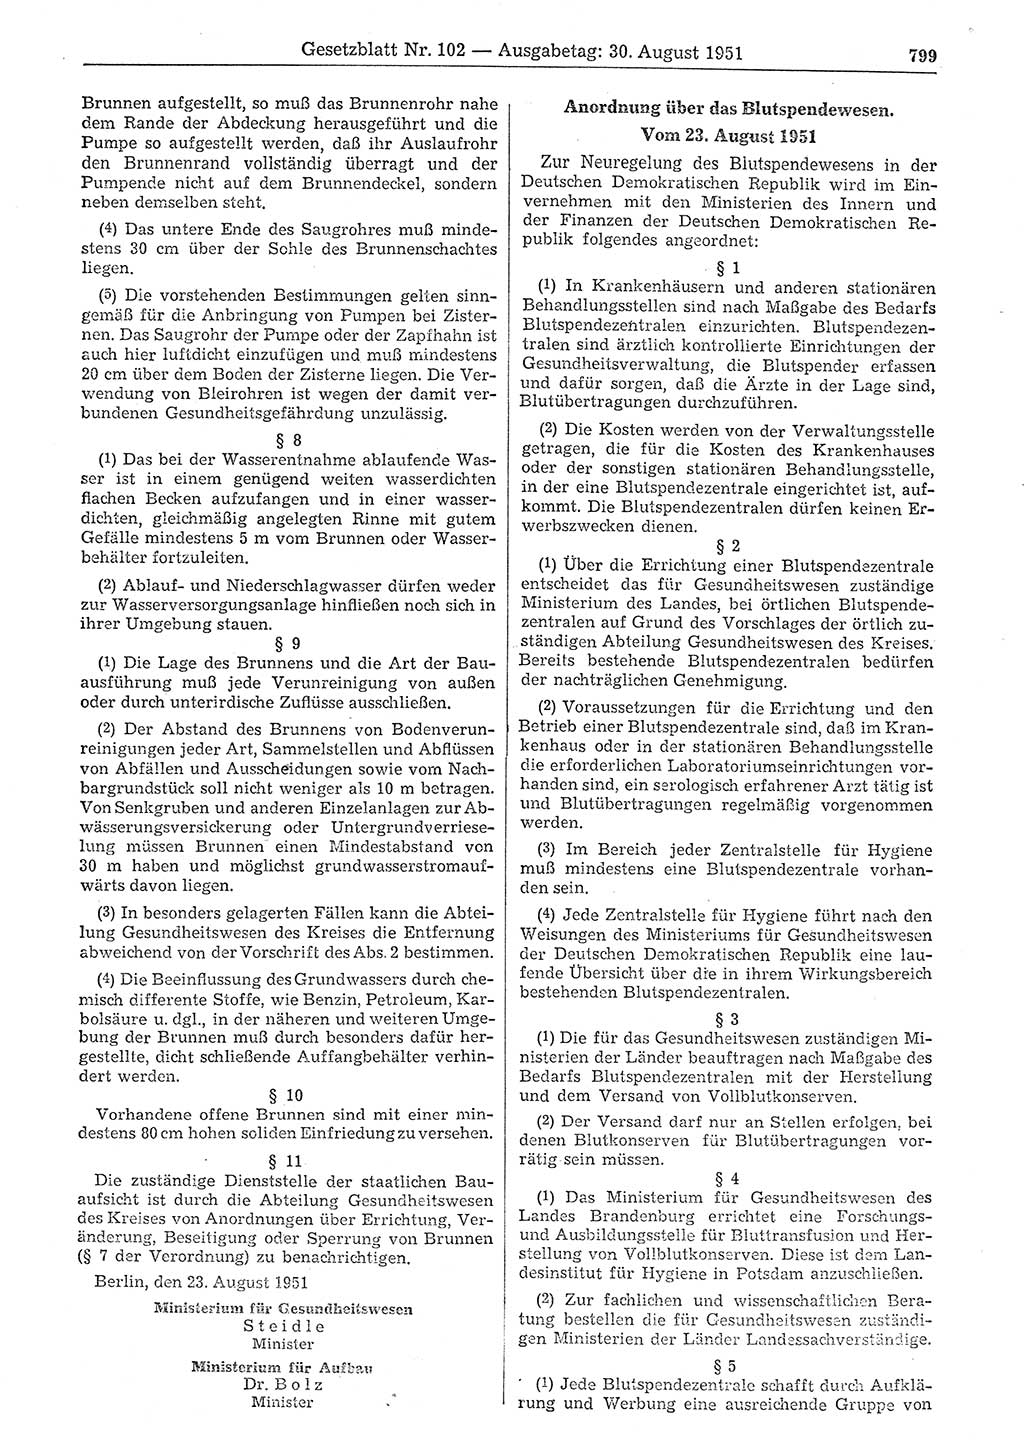 Gesetzblatt (GBl.) der Deutschen Demokratischen Republik (DDR) 1951, Seite 799 (GBl. DDR 1951, S. 799)